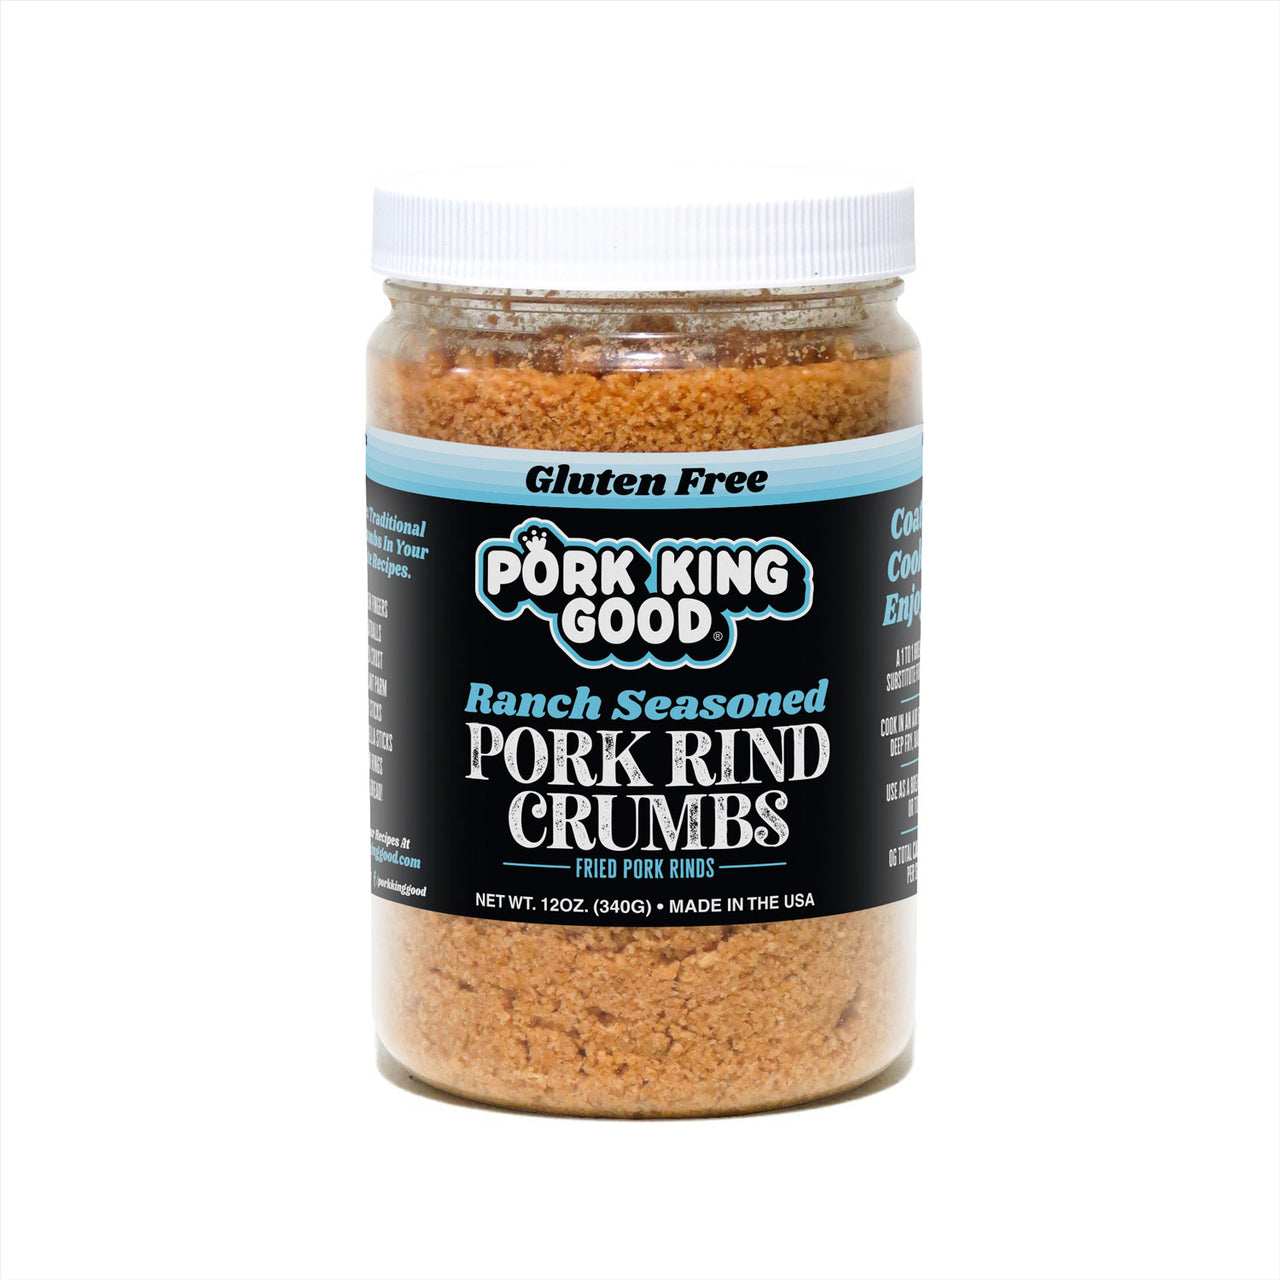 Pork King Good Pork Rind Crumbs, 12 oz / Unseasoned